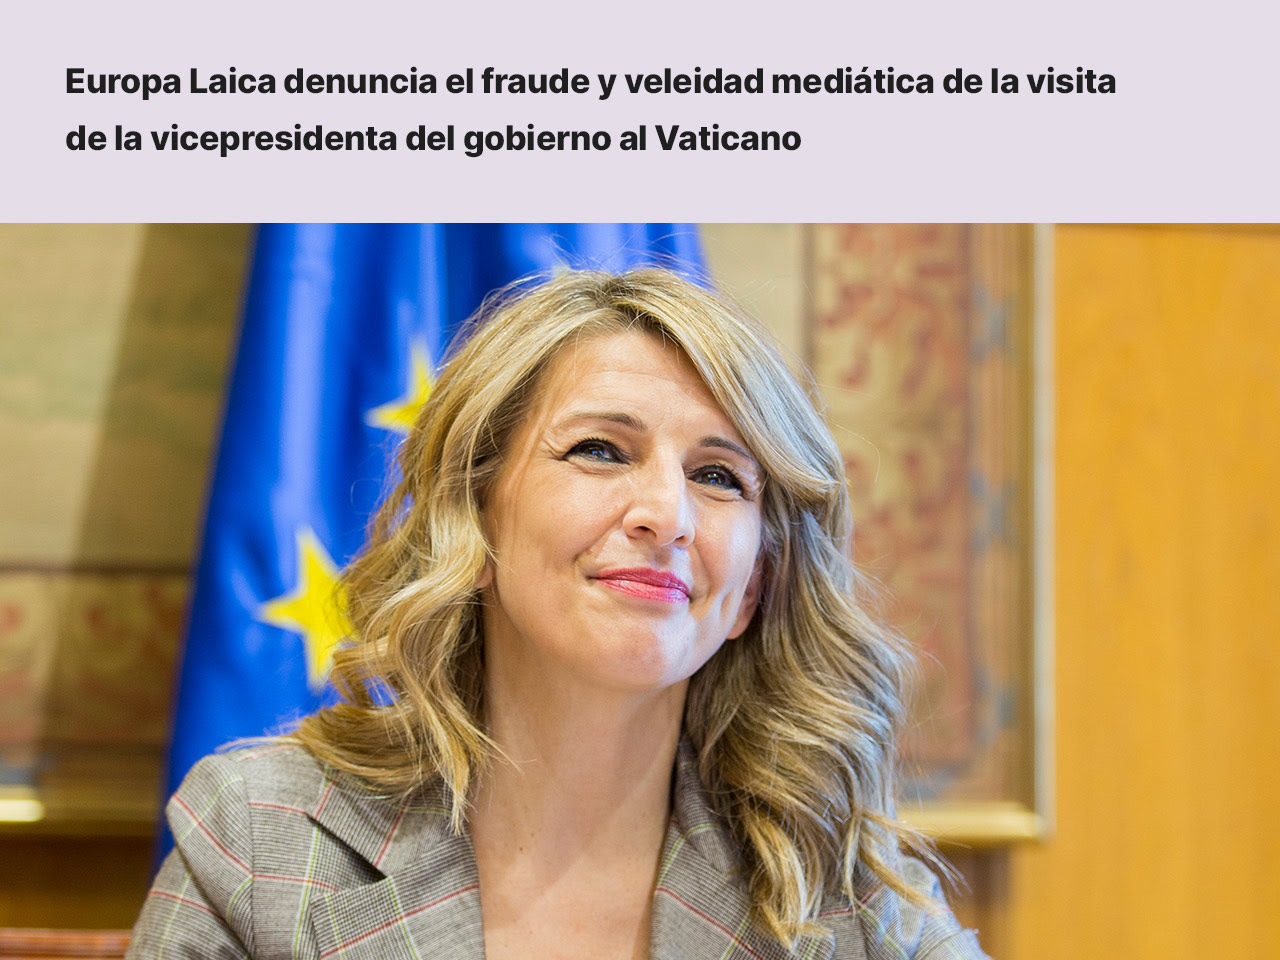 Europa Laica denuncia el fraude y veleidad mediática de la visita de la vicepresidenta del gobierno al Vaticano